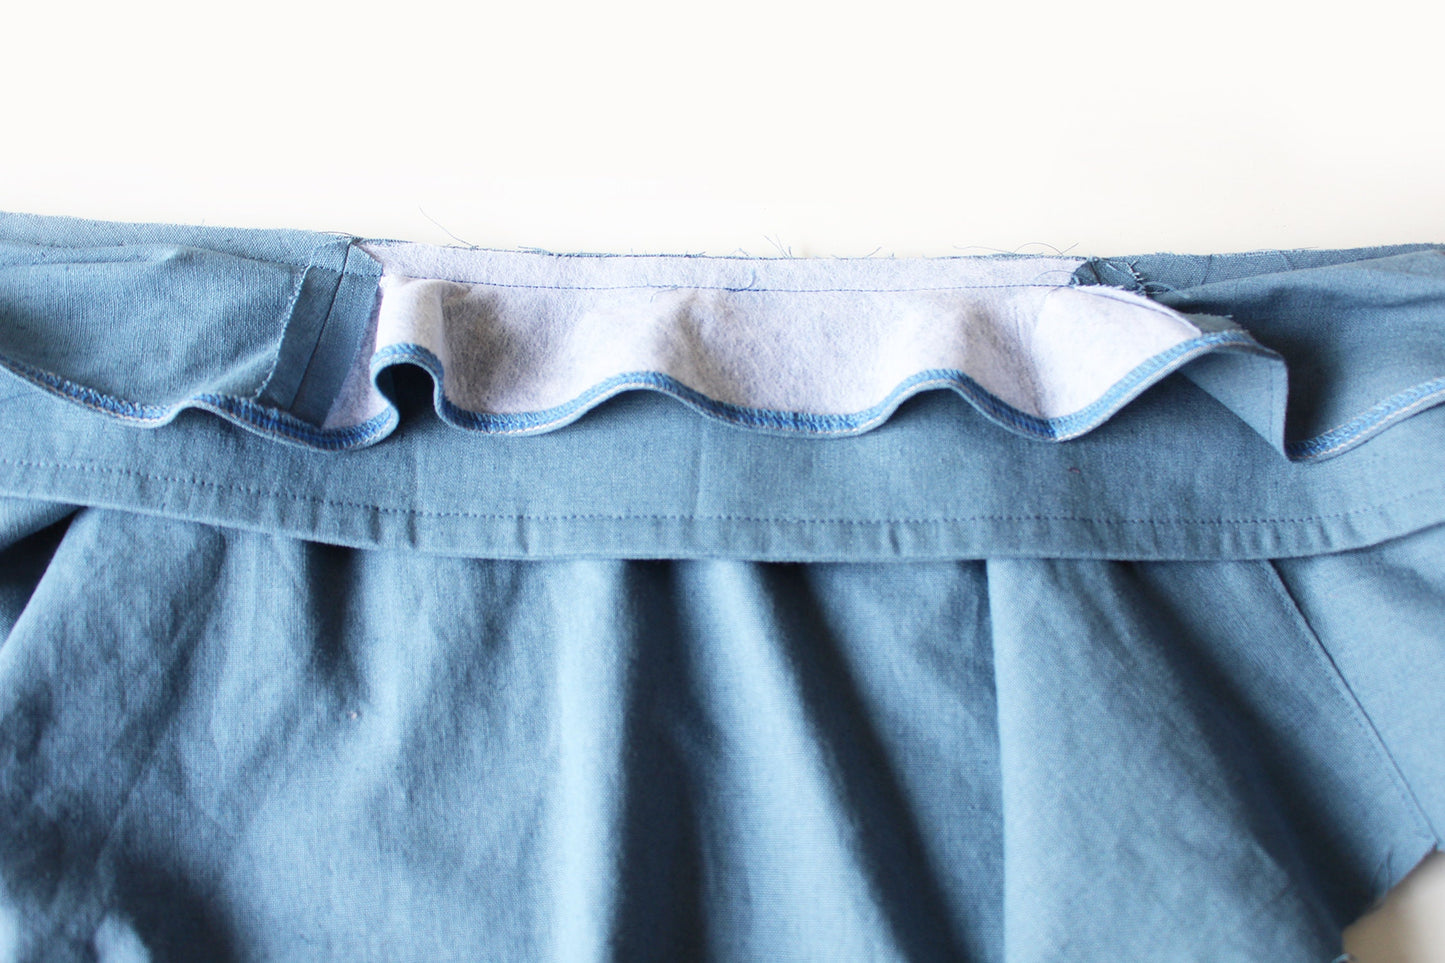 LOTTIE JACKET/COAT sewing pattern